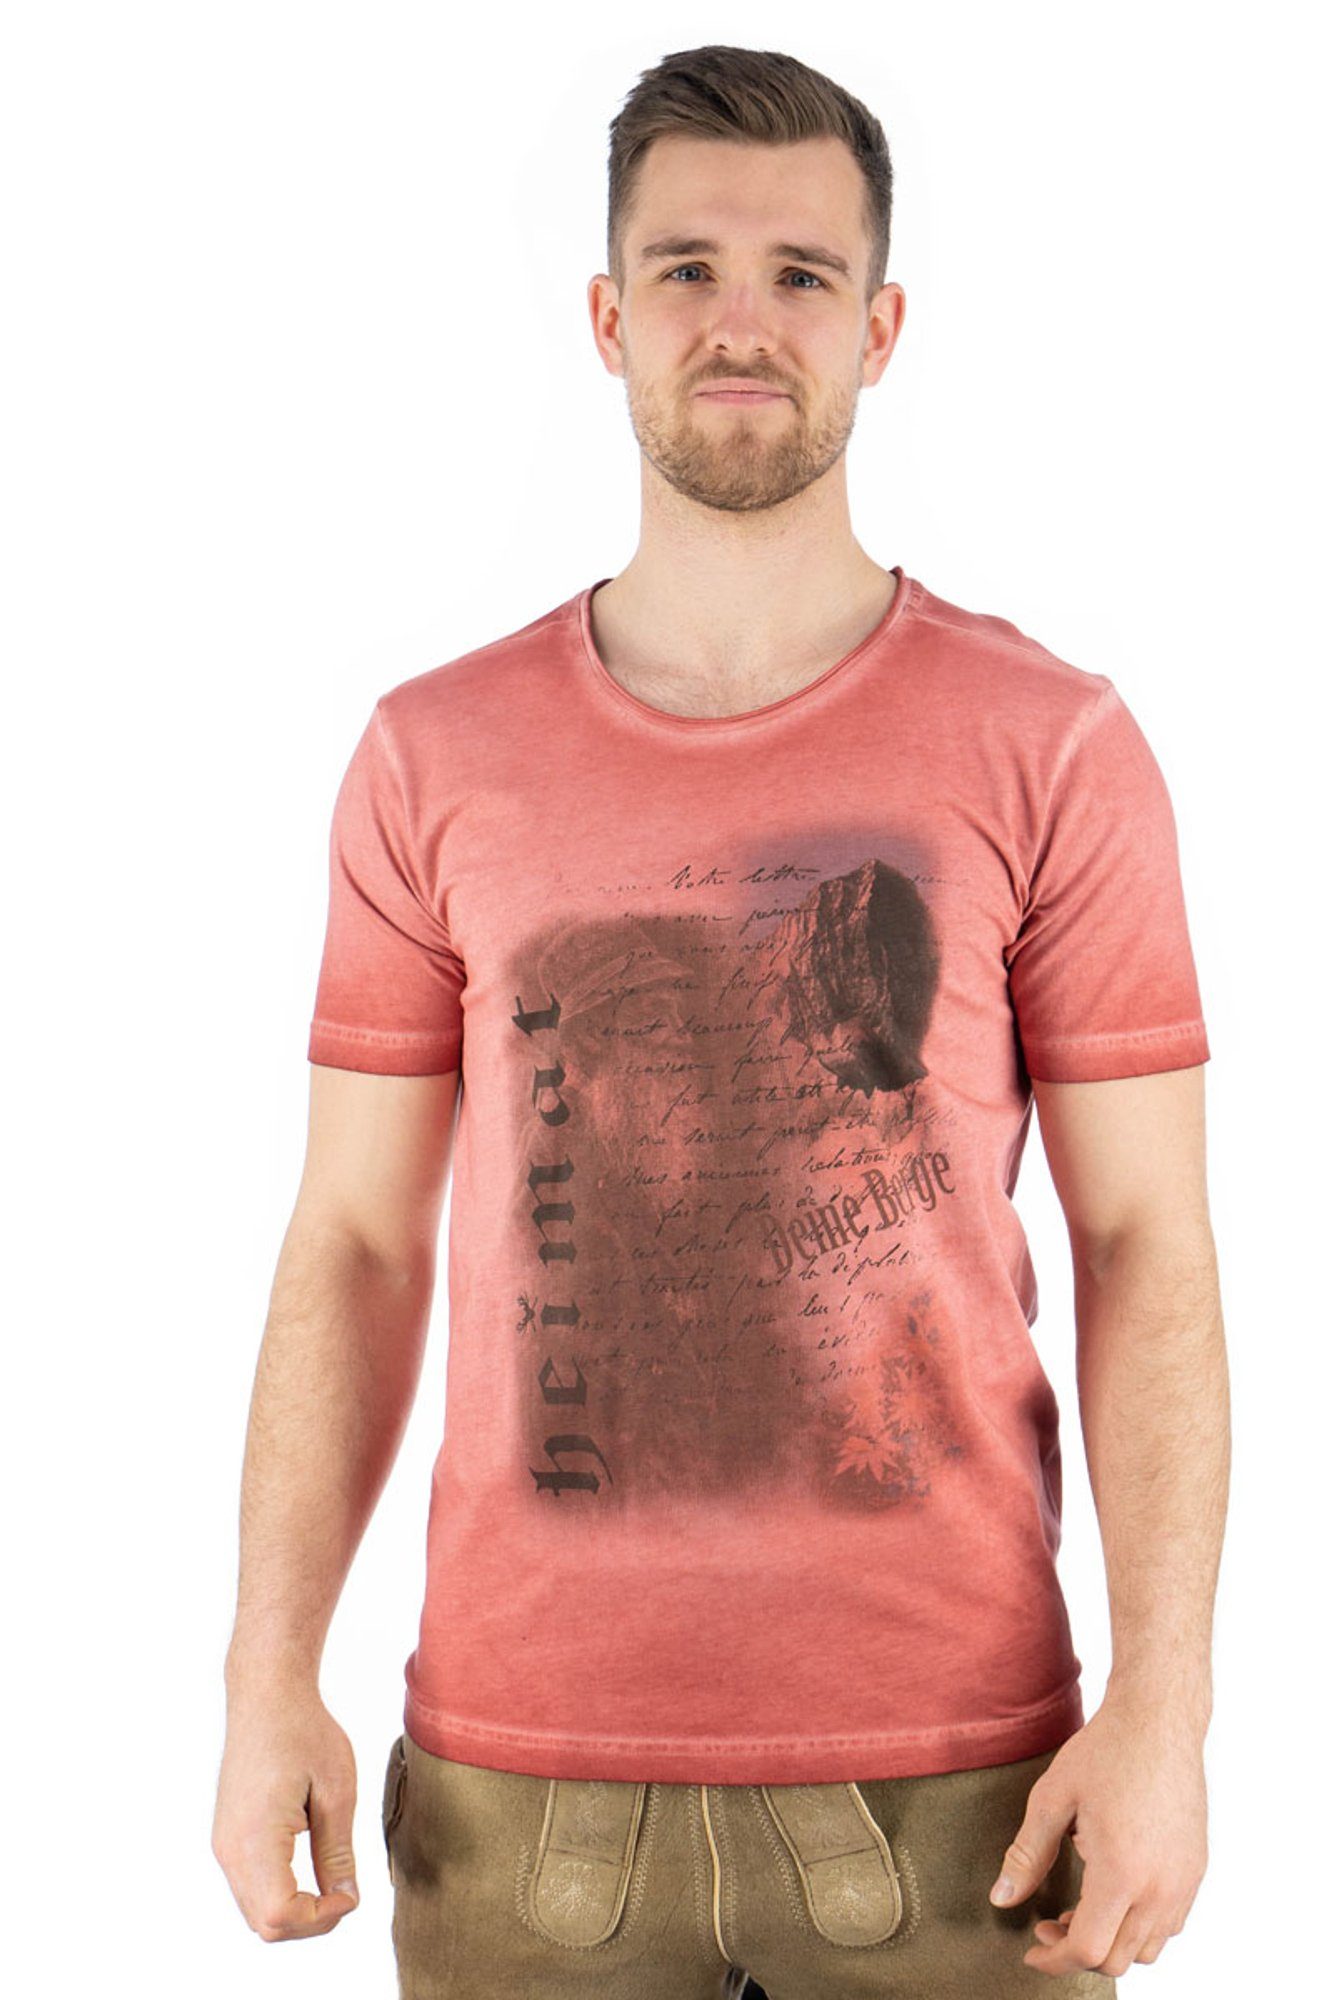 OS-Trachten Trachtenshirt Praiol Kurzarm T-Shirt mit Motivdruck weinrot | Trachtenshirts